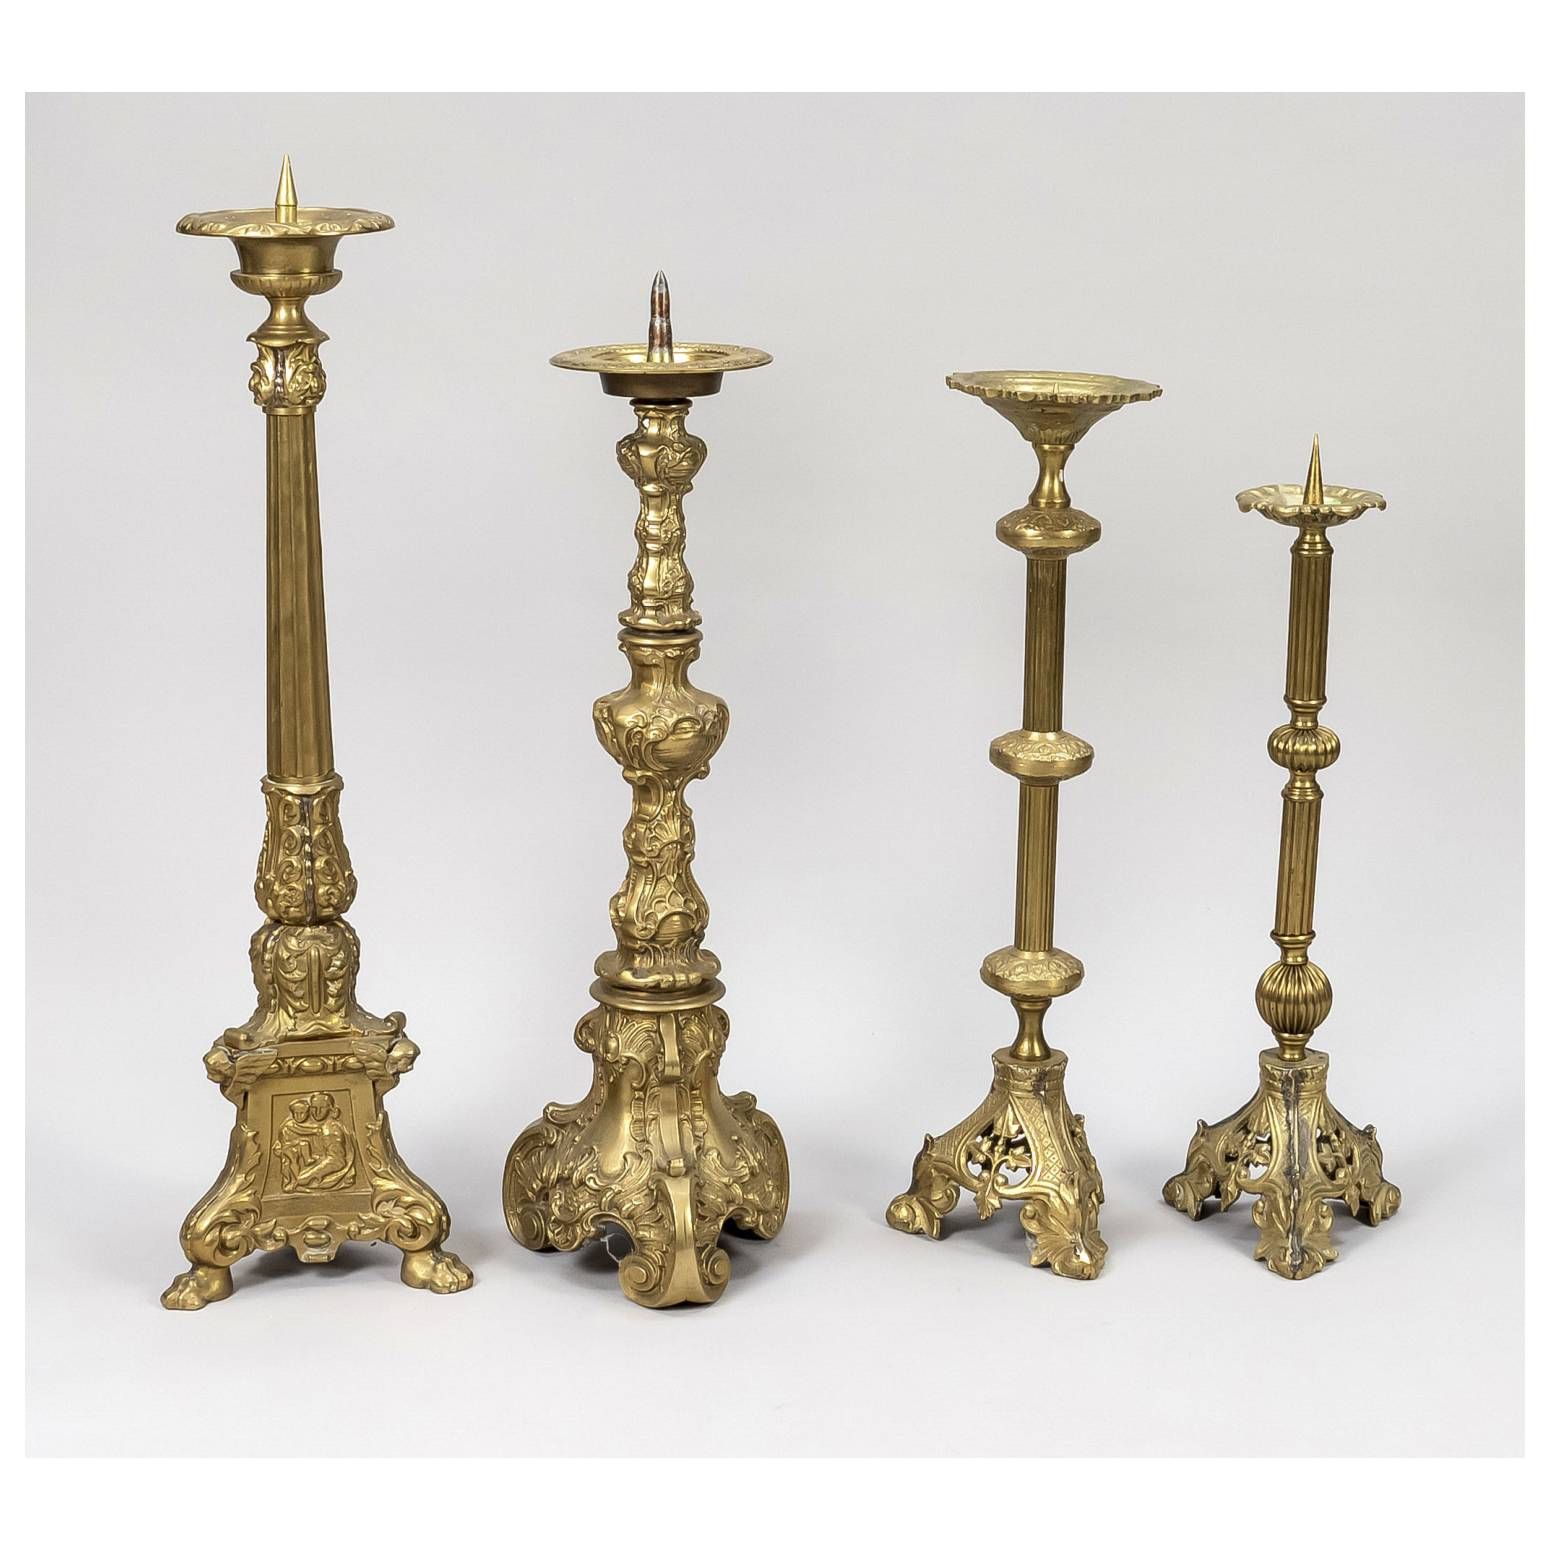 4 altar candlesticks, late 19th century, brass/bronze. A…